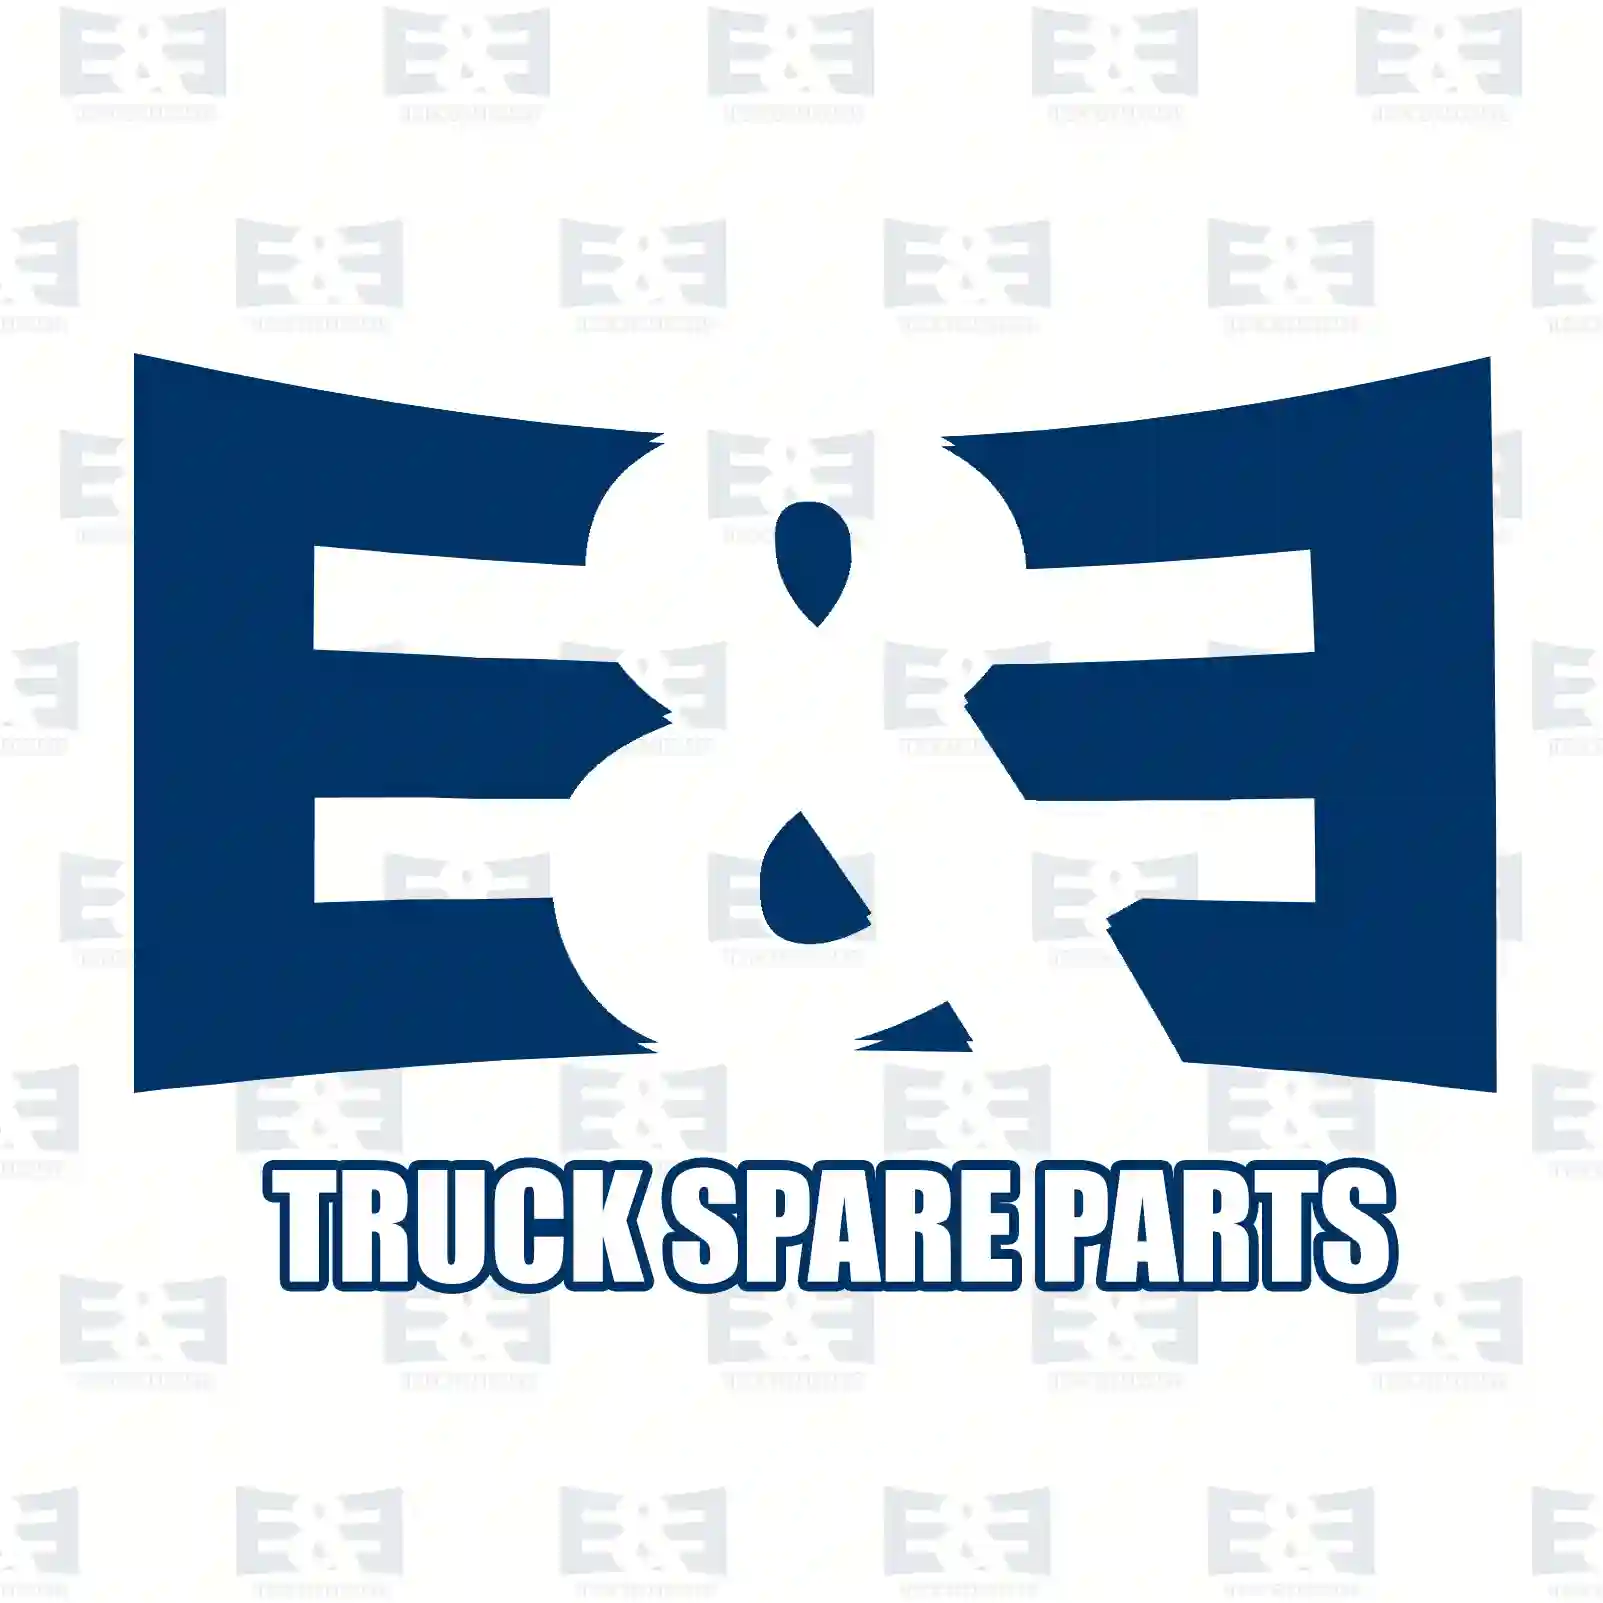 Wheel brake cylinder, 2E2294686, GWC1149, RTC3624, 09983470, 07980525, 08121575, 09983470, 1560032, 01560032, 07980525, 08121575, 09983470, 8121575, GWC1149, RTC3624, GWC1149 ||  2E2294686 E&E Truck Spare Parts | Truck Spare Parts, Auotomotive Spare Parts Wheel brake cylinder, 2E2294686, GWC1149, RTC3624, 09983470, 07980525, 08121575, 09983470, 1560032, 01560032, 07980525, 08121575, 09983470, 8121575, GWC1149, RTC3624, GWC1149 ||  2E2294686 E&E Truck Spare Parts | Truck Spare Parts, Auotomotive Spare Parts